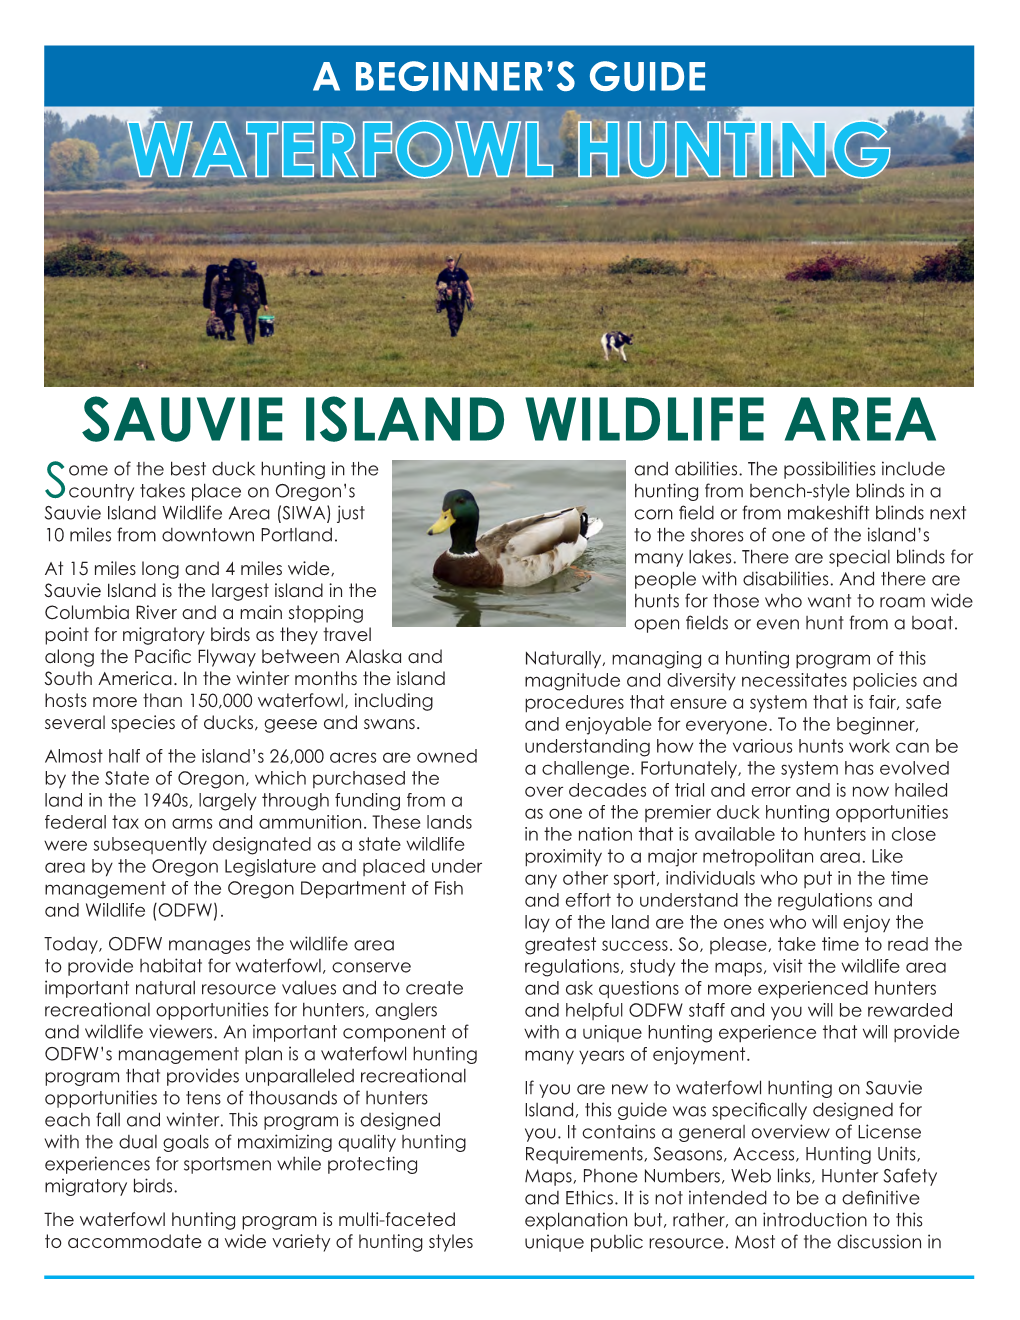 Sauvie Island Waterfowl Hunting